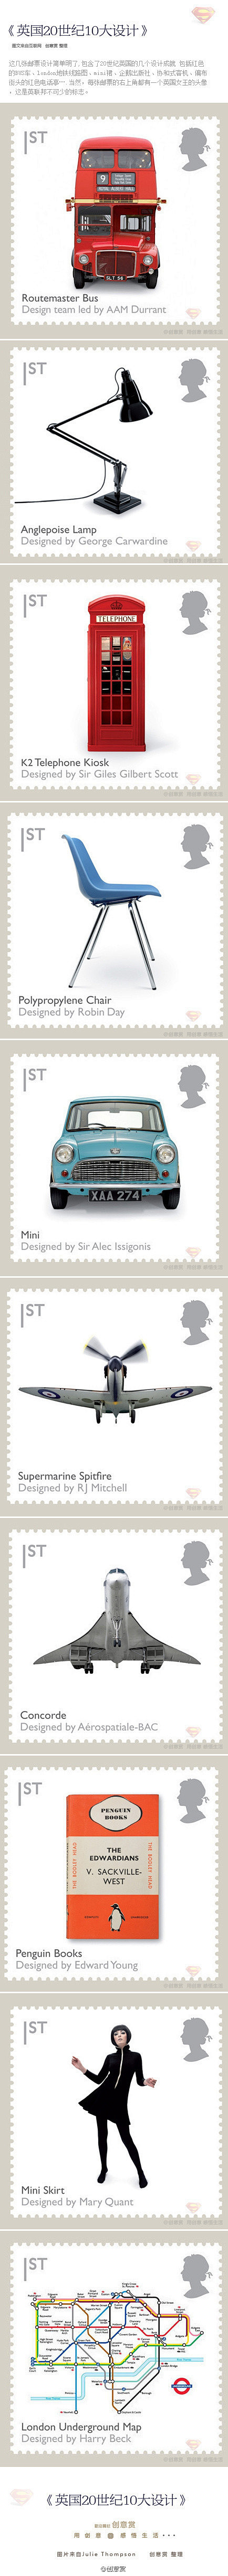 【英国20世纪10大设计】这几张邮票设计...